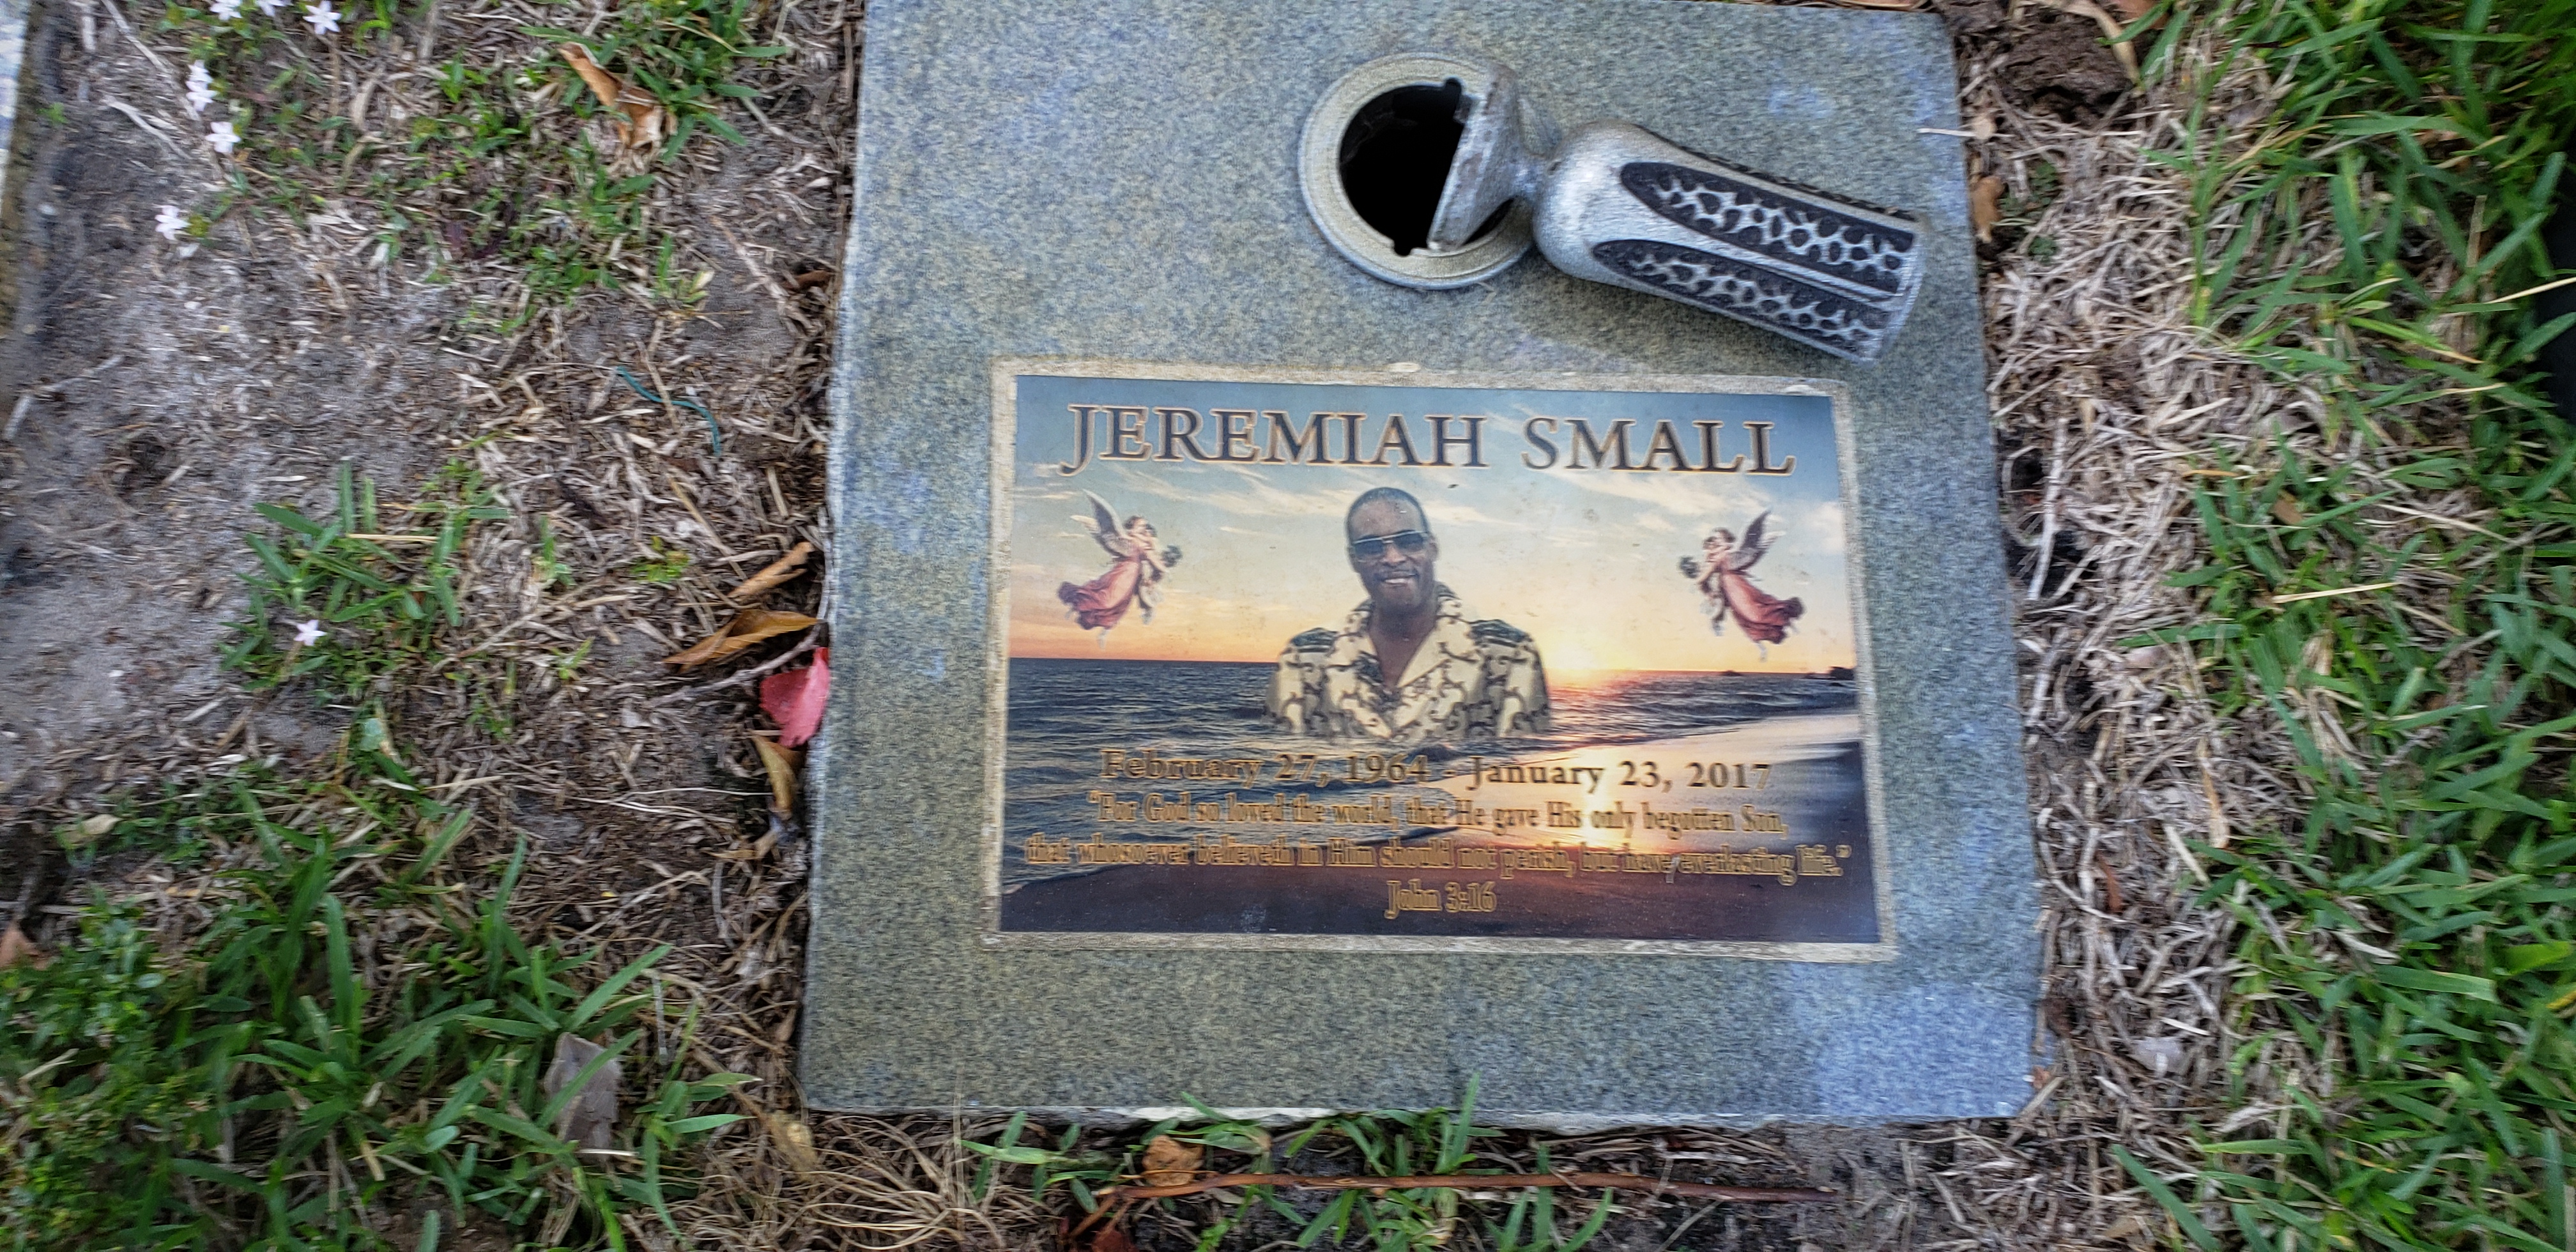 Jeremiah Small